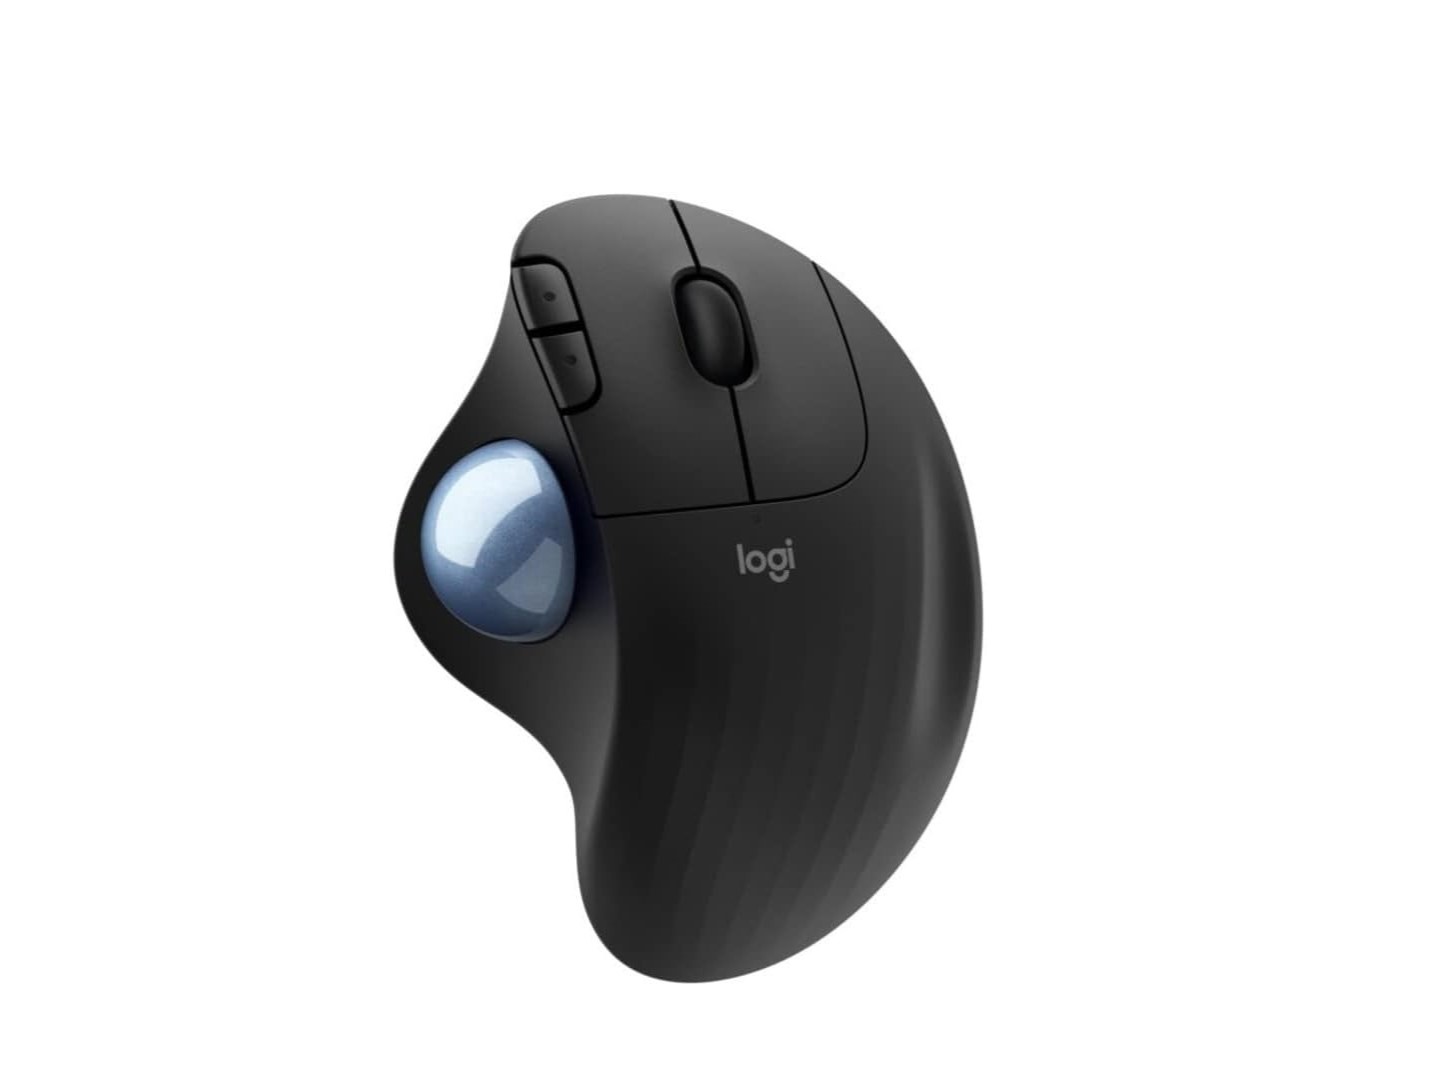 Imagem de produto do mouse trackball sem fio Logitech Ergo M575.